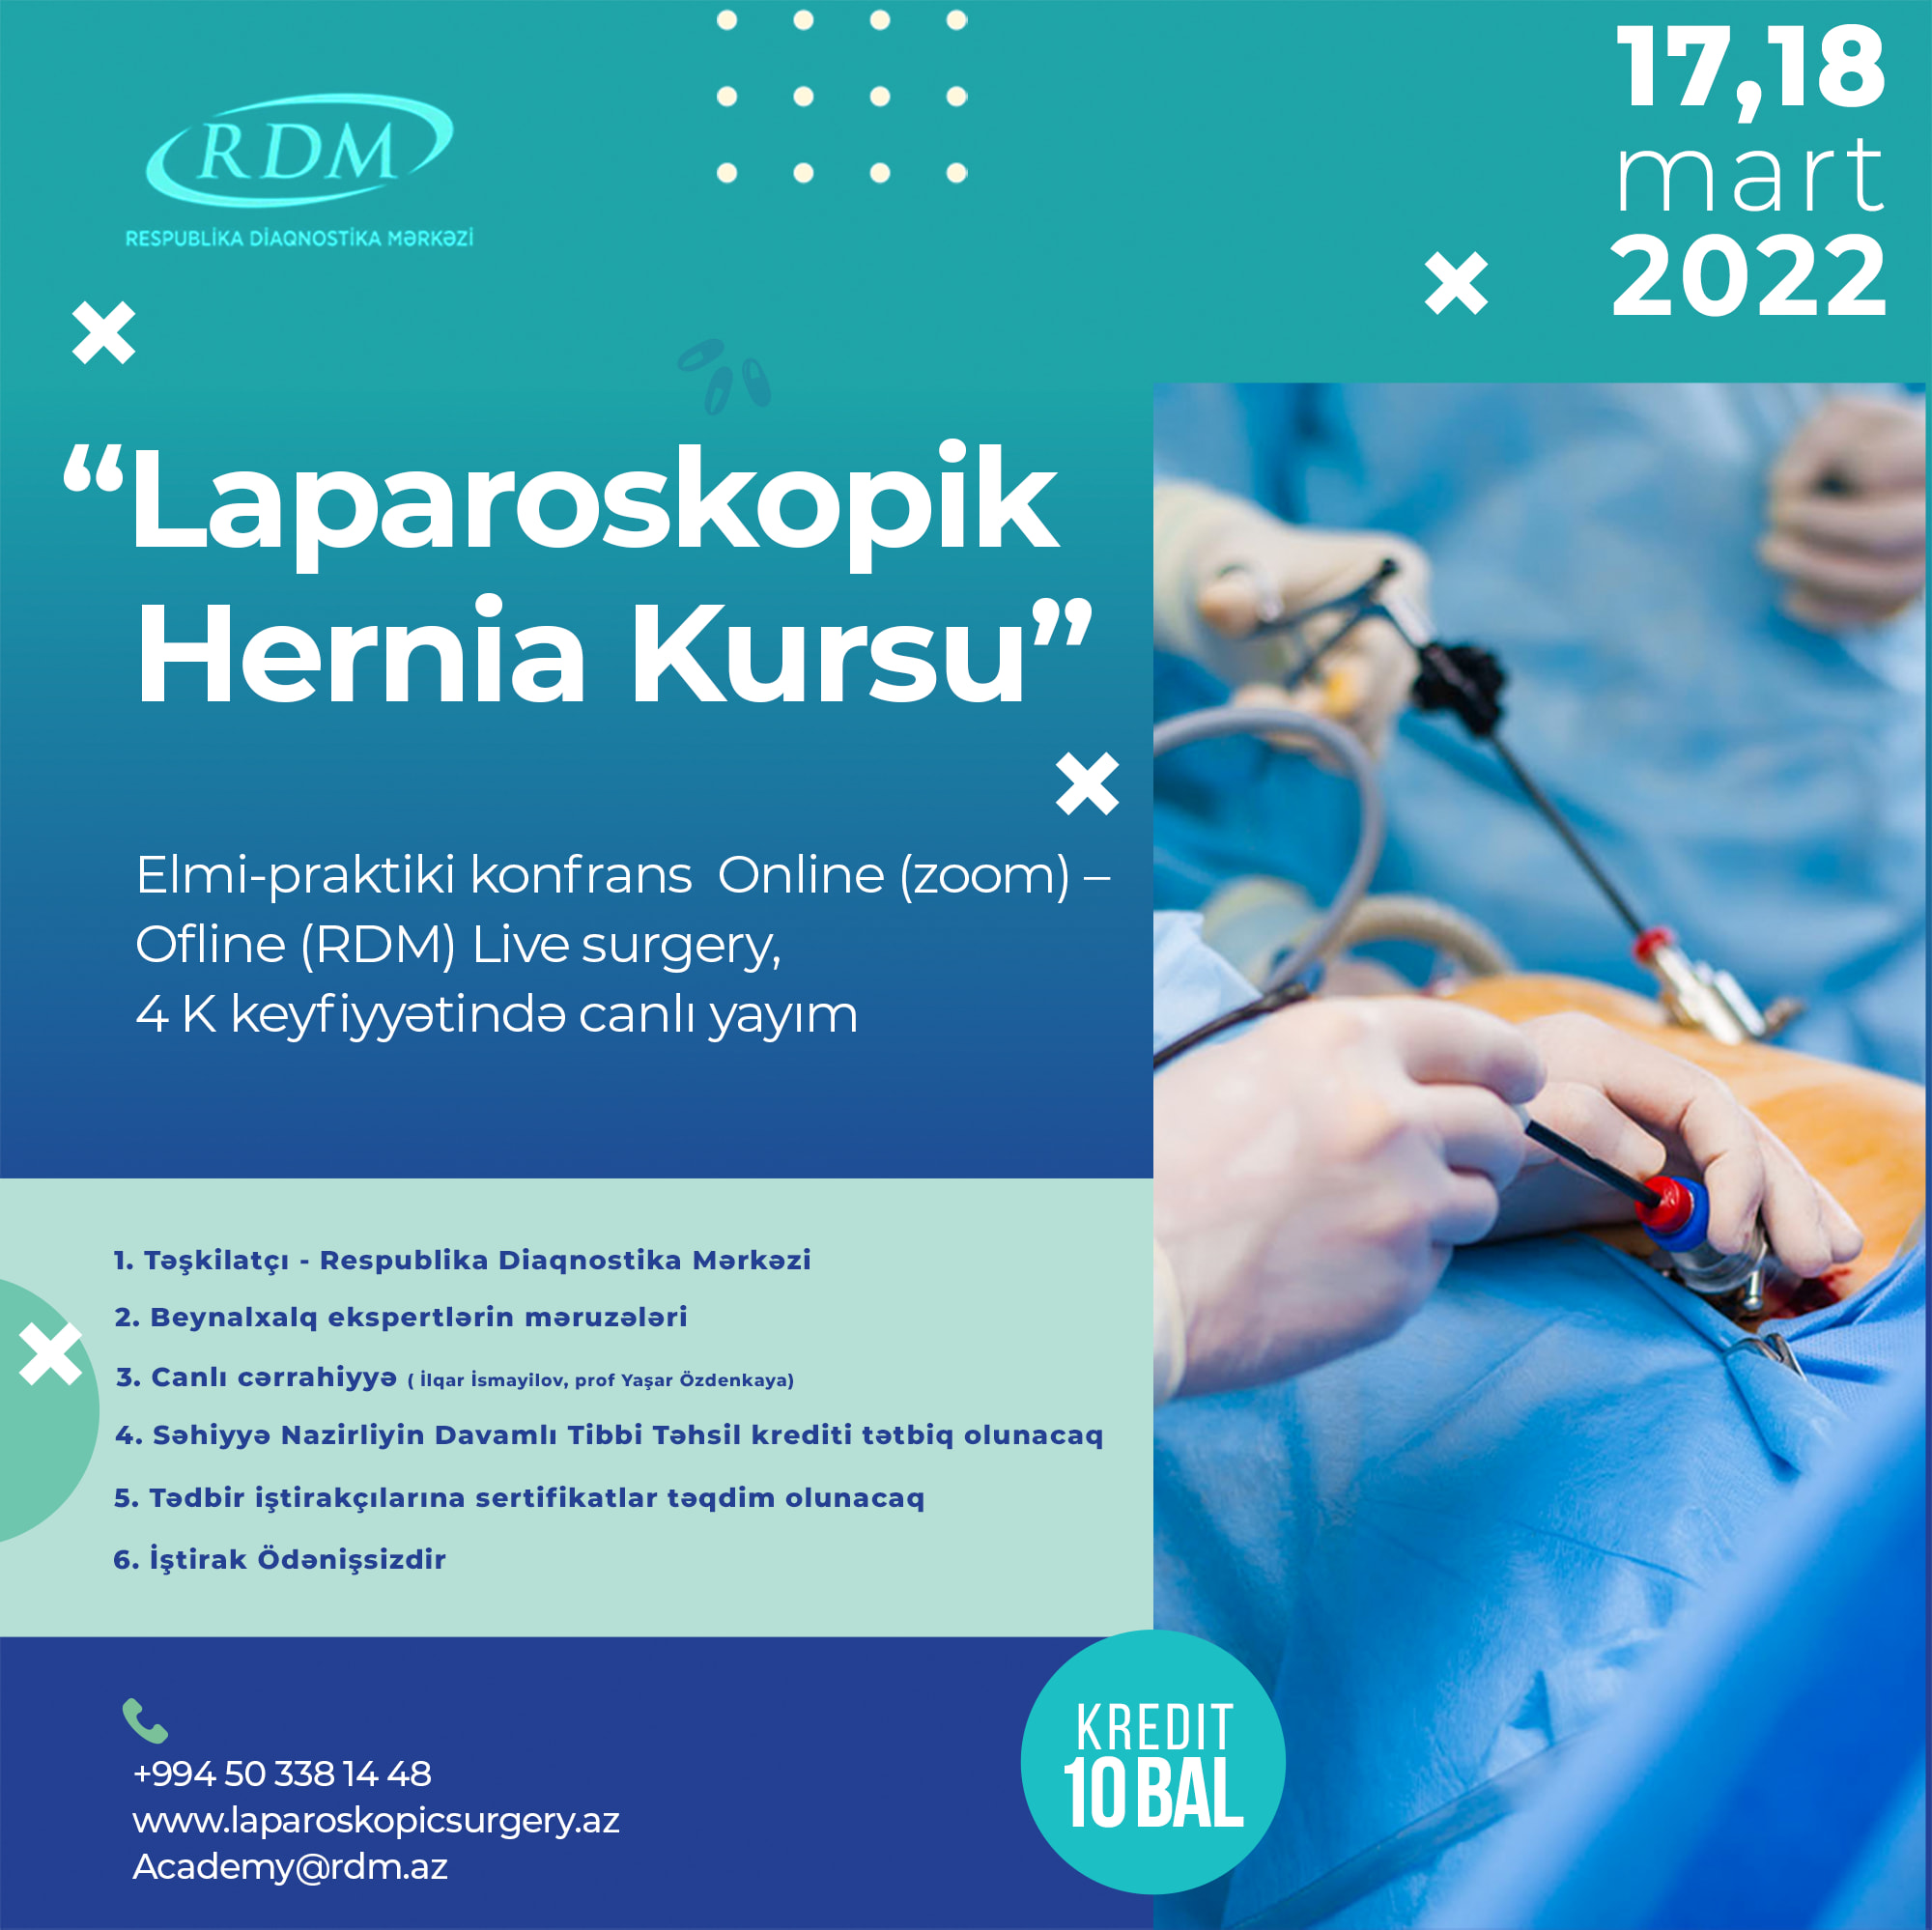 RDM-də laparoskopik Hernia kursu keçiriləcək